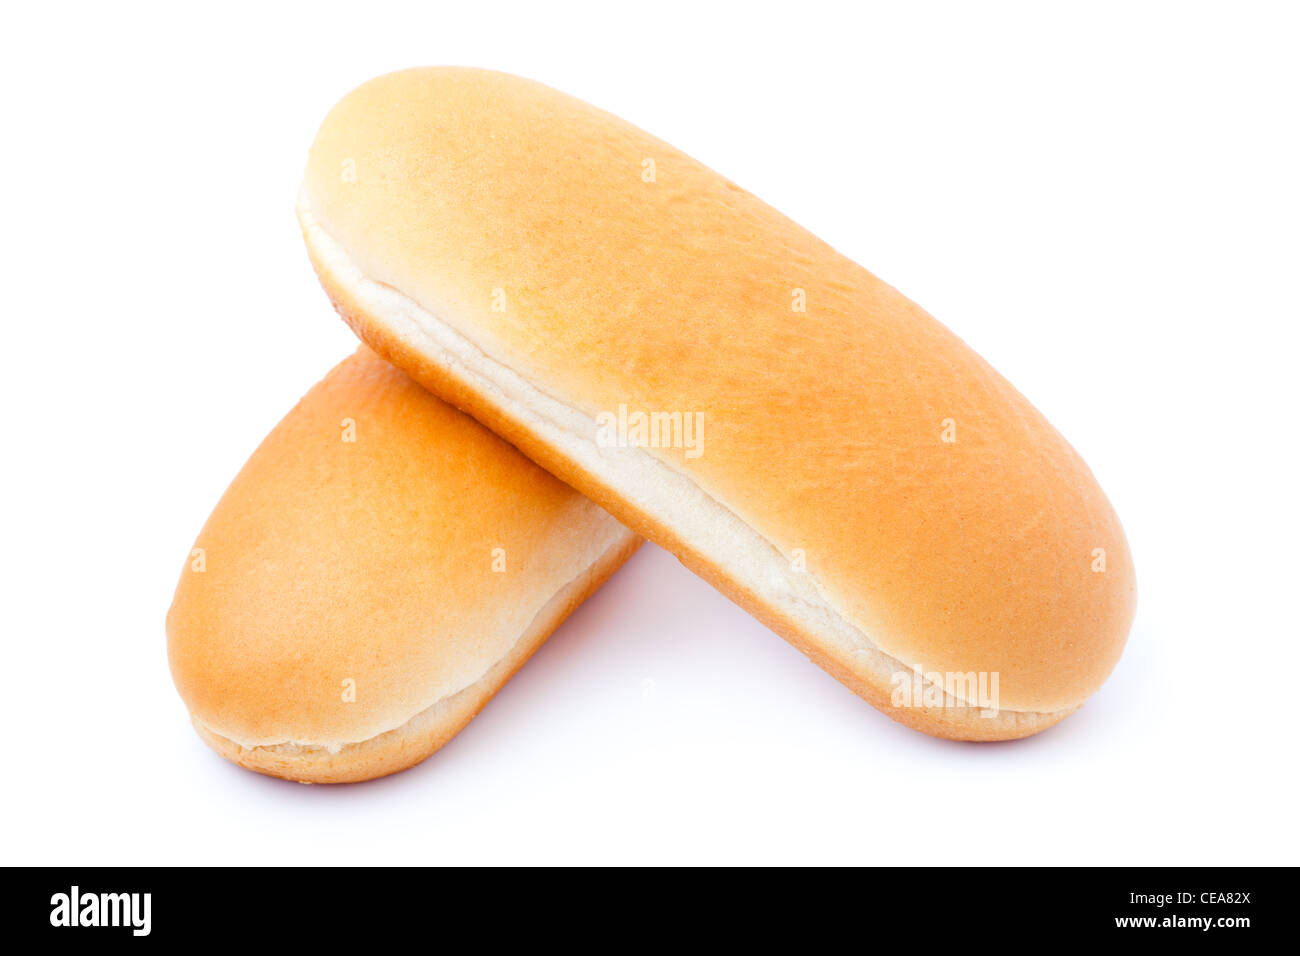 hot dog bun, isolated on white Stock Photo